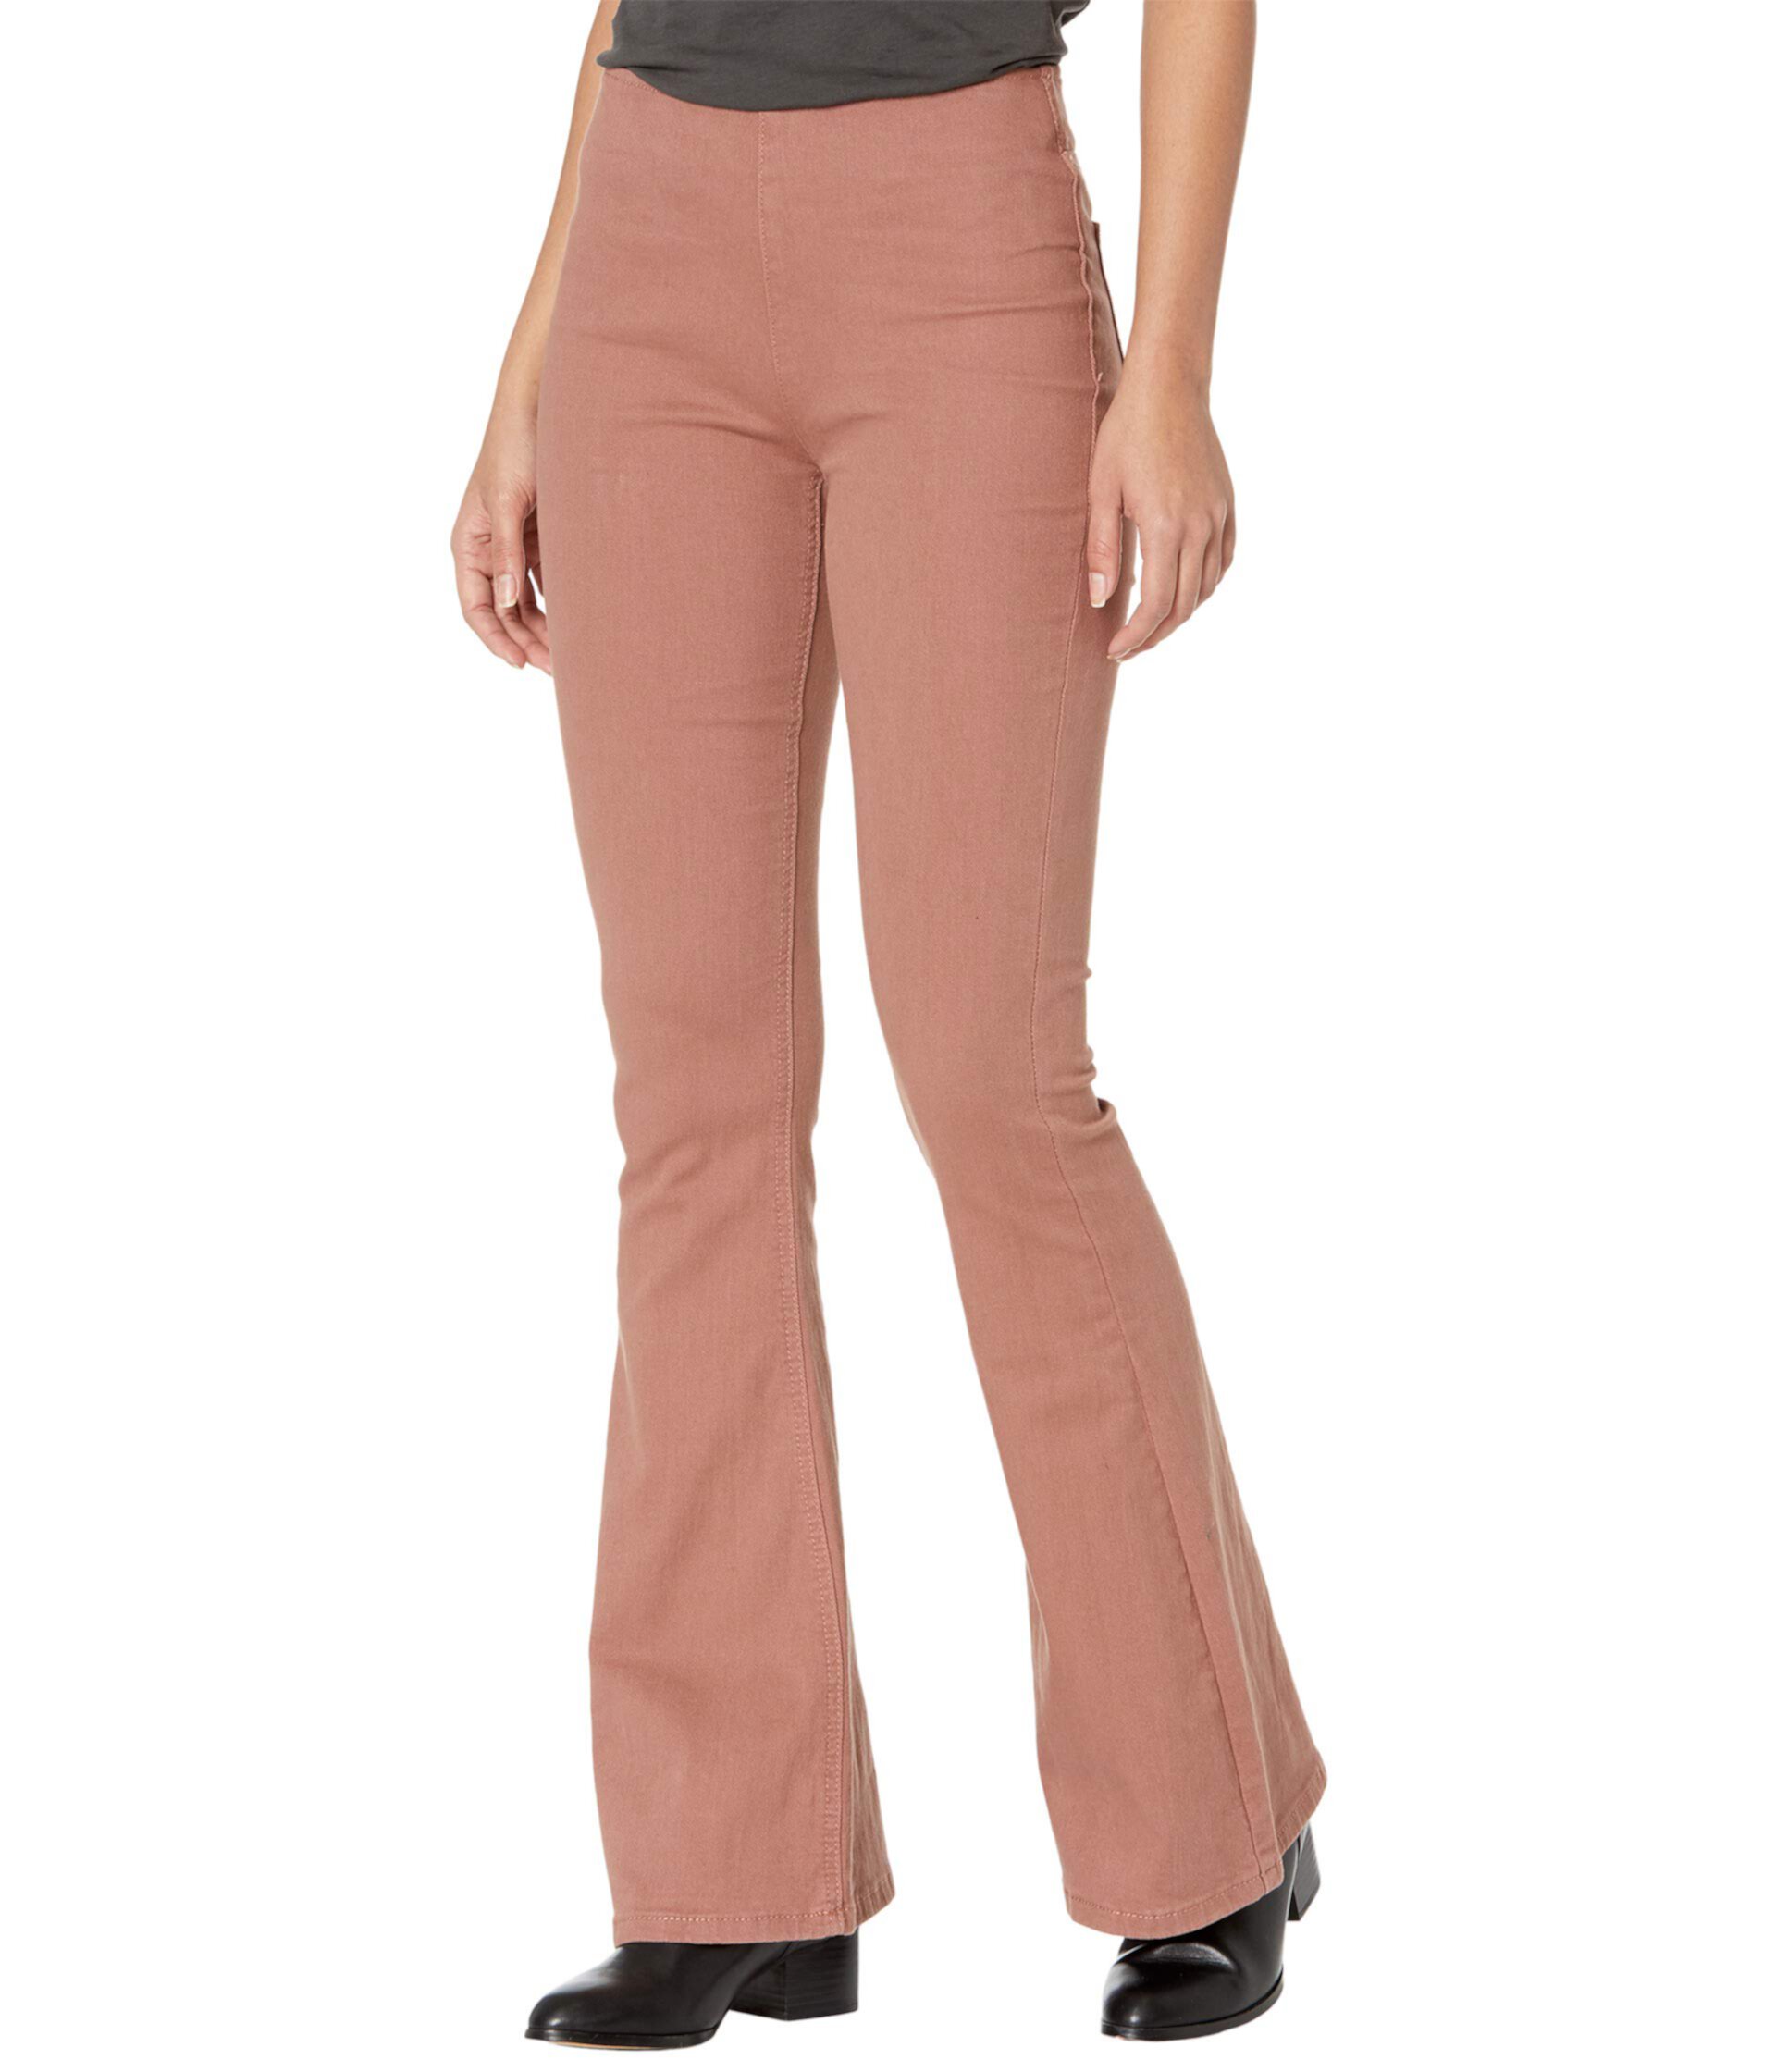 Расклешенные брюки без застежки с высокой посадкой в цвете Dusty Rose W1P6156 Rock and Roll Cowgirl